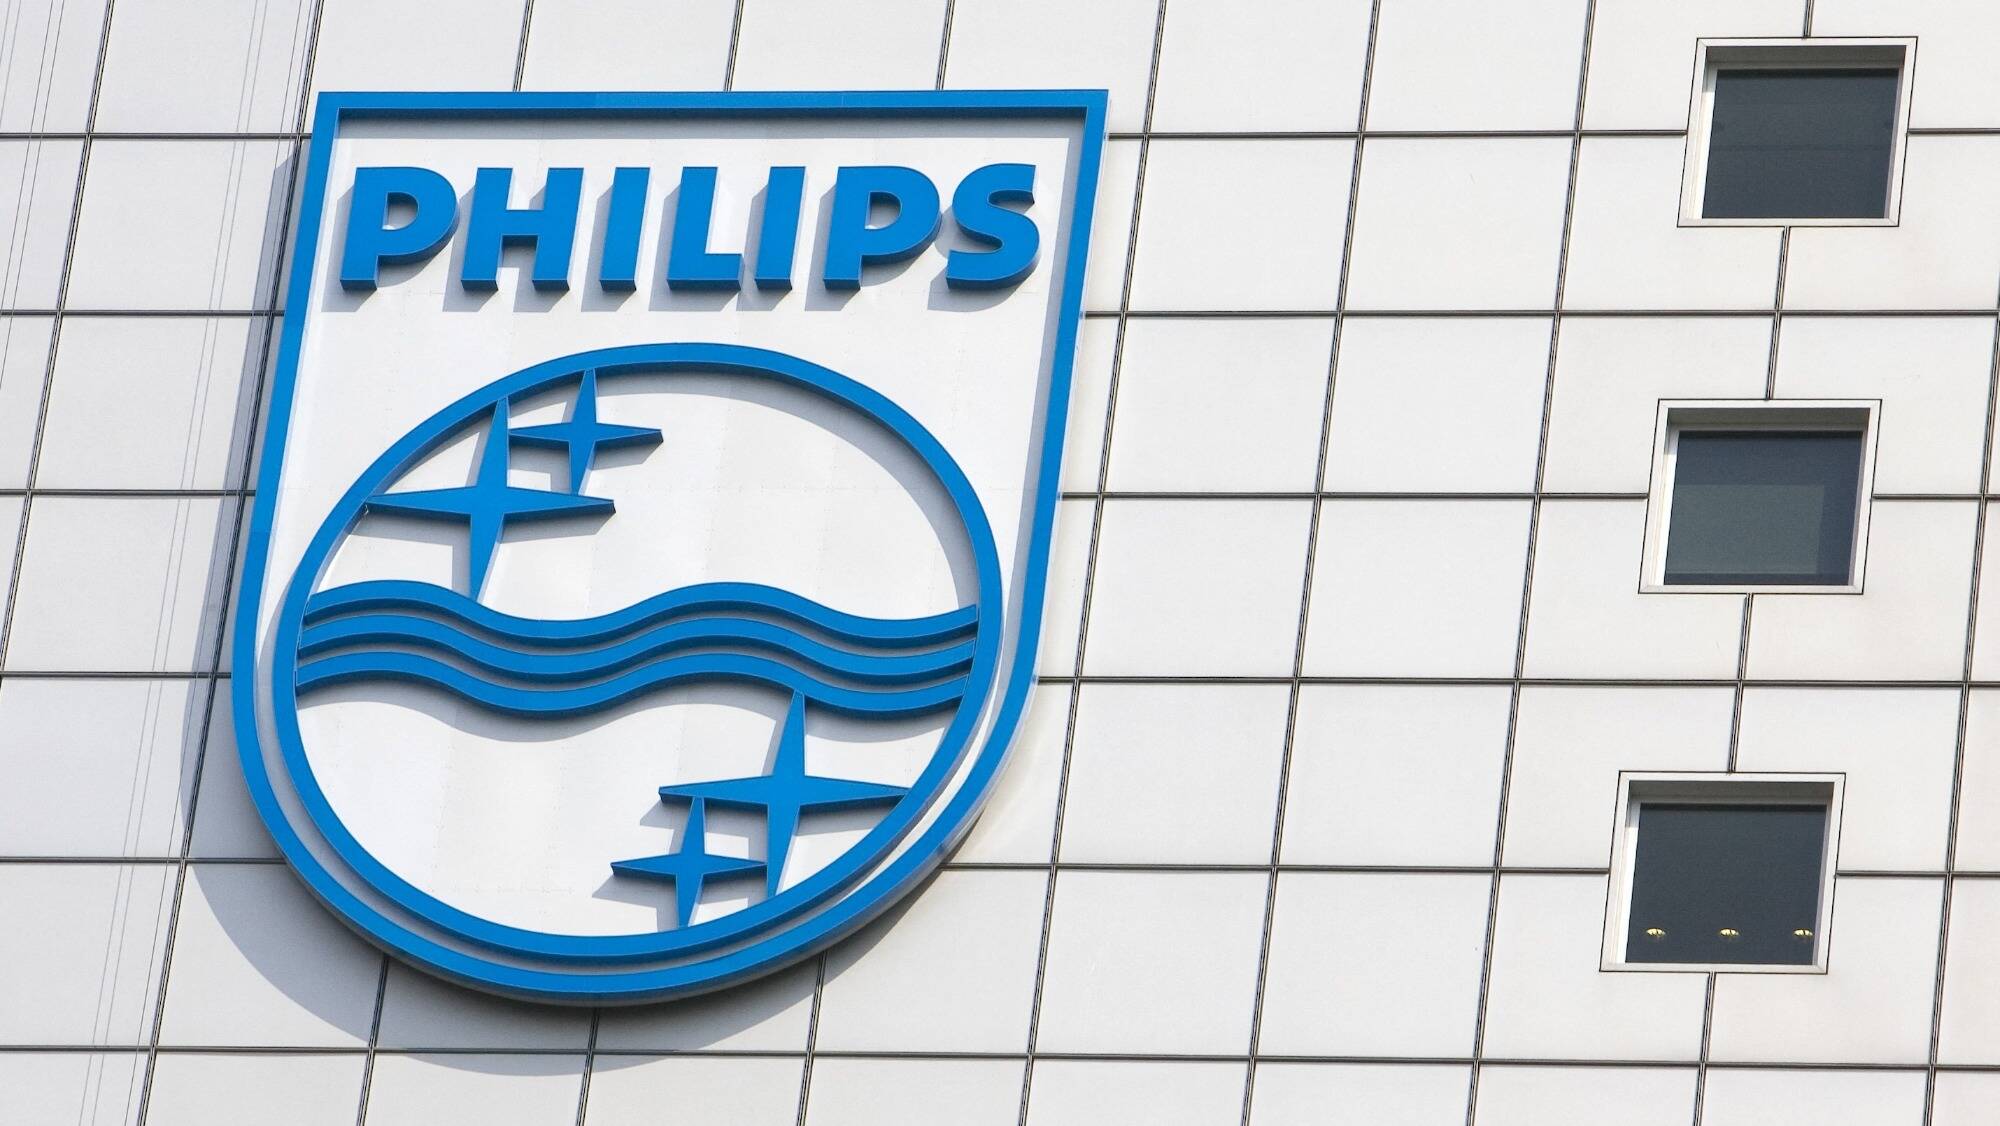 L'appareil respiratoire de Philips serait dangereux pour la santé - La Libre